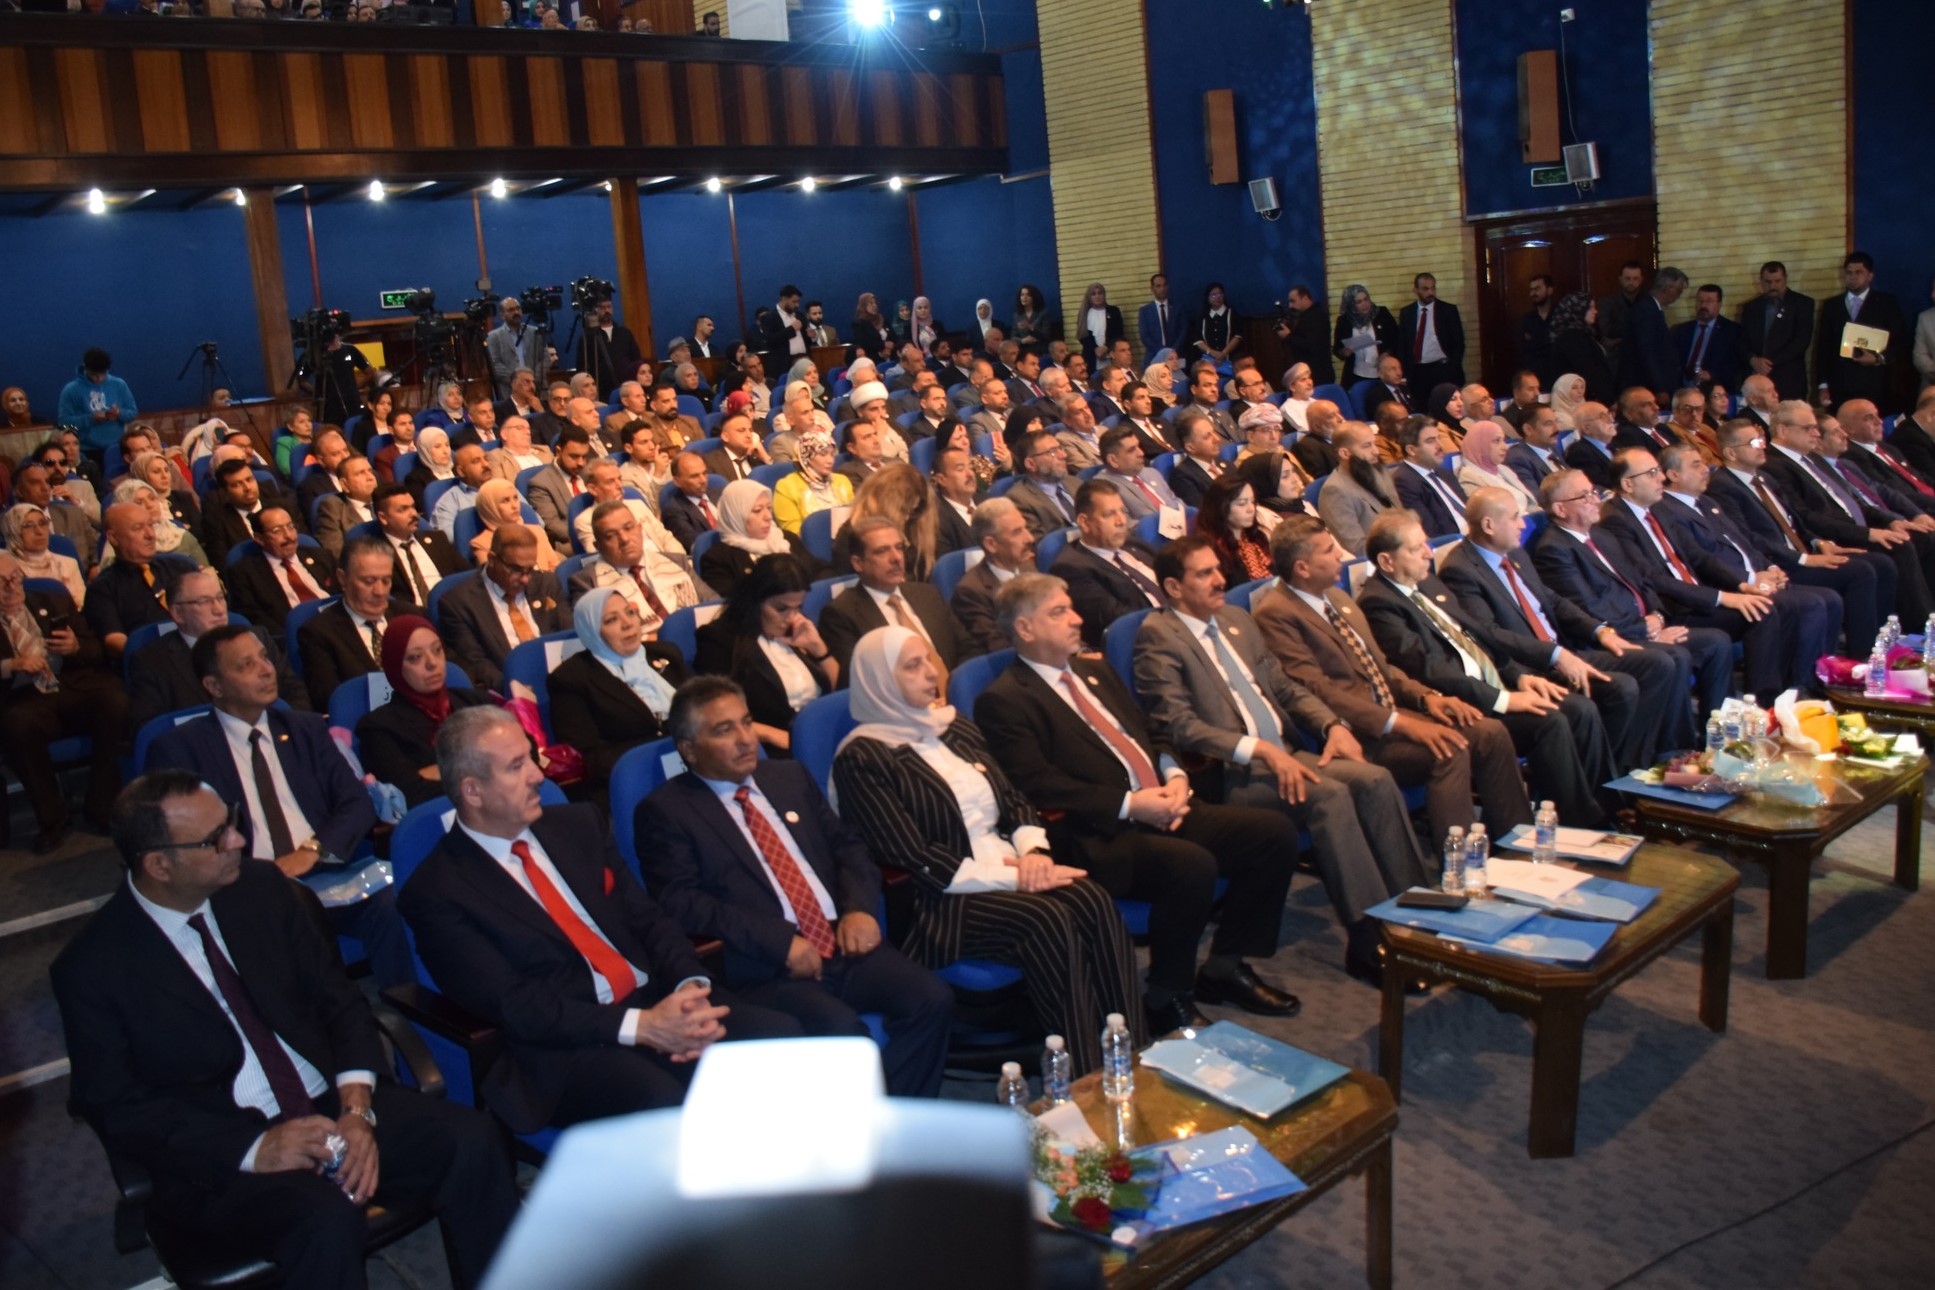 جامعة الحسين بن طلال تشارك في المؤتمر الدولي (الامن الانساني والتنمية المستدامة في العراق والعالم العربي - الواقع والتحديات وسبل المواجهة) في بغداد